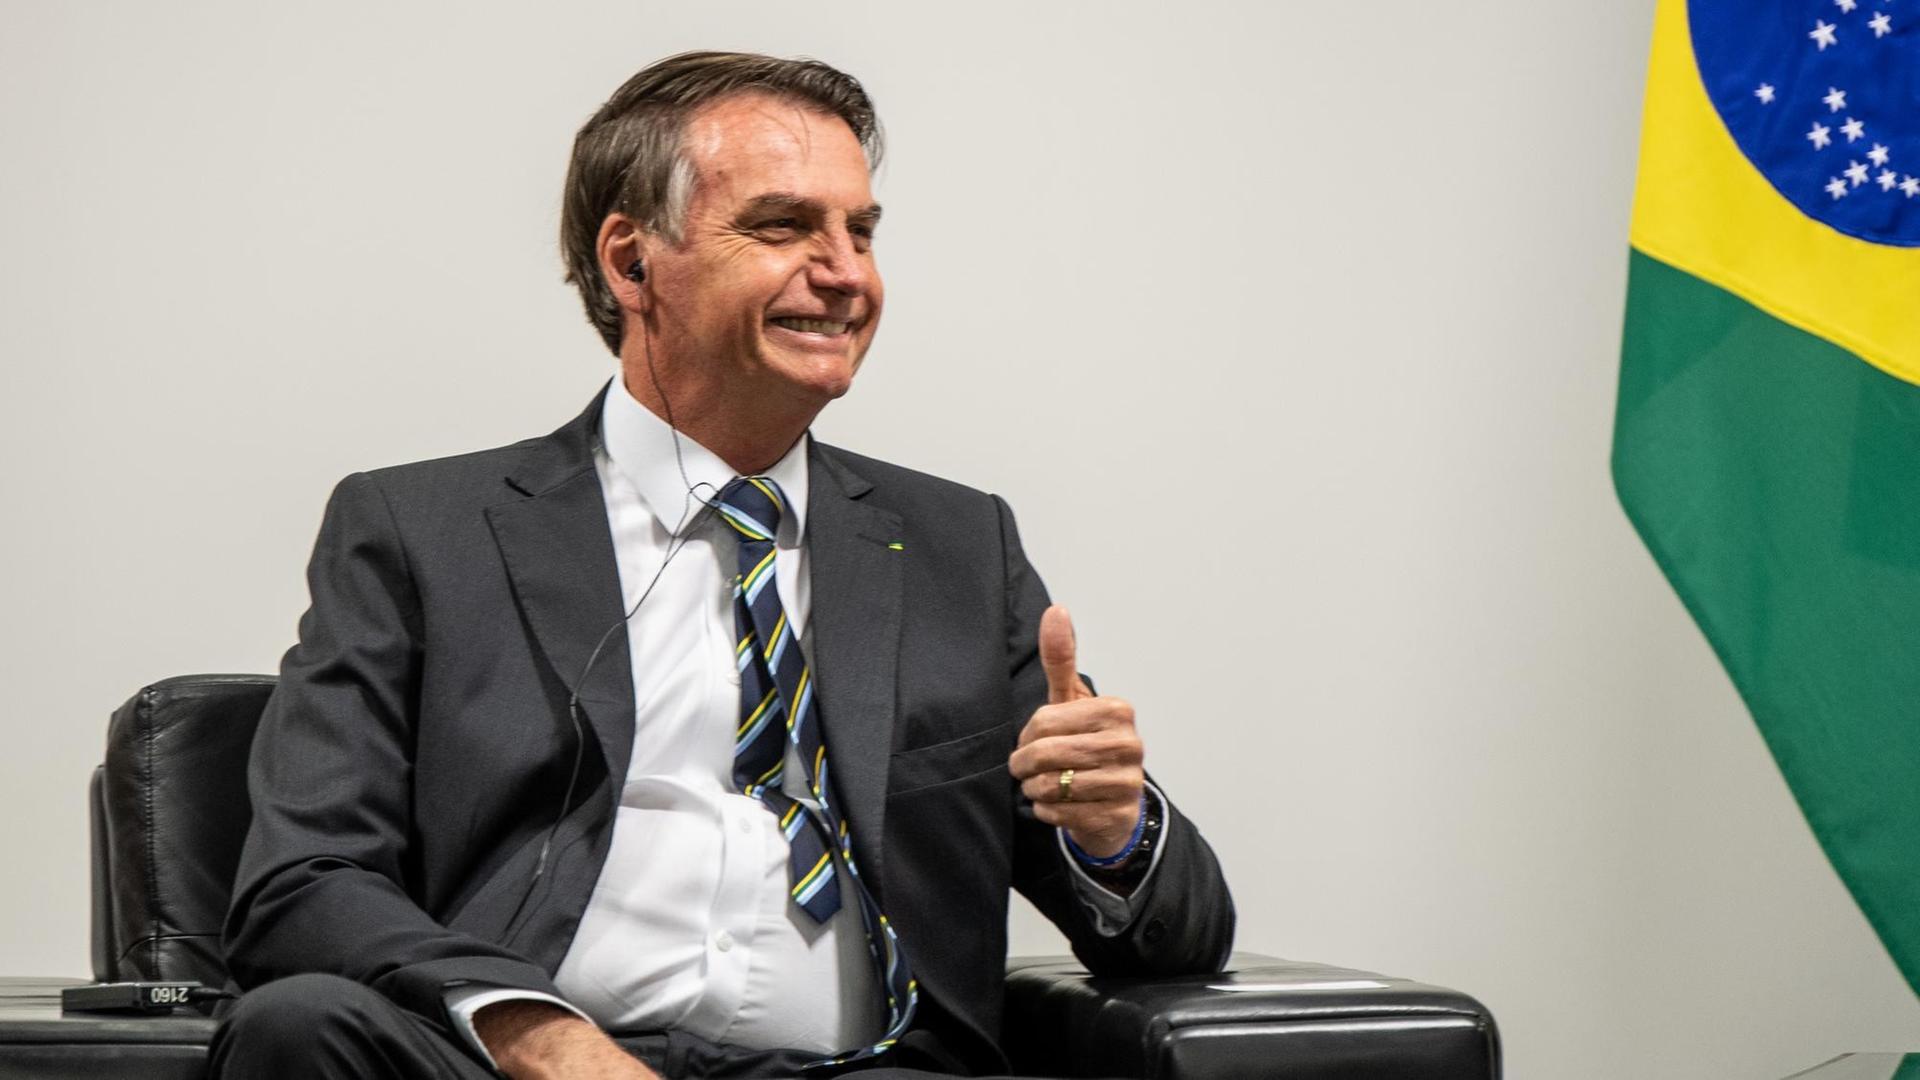 Jair Bolsonaro, Präsident von Brasilien, hebt den Daumen